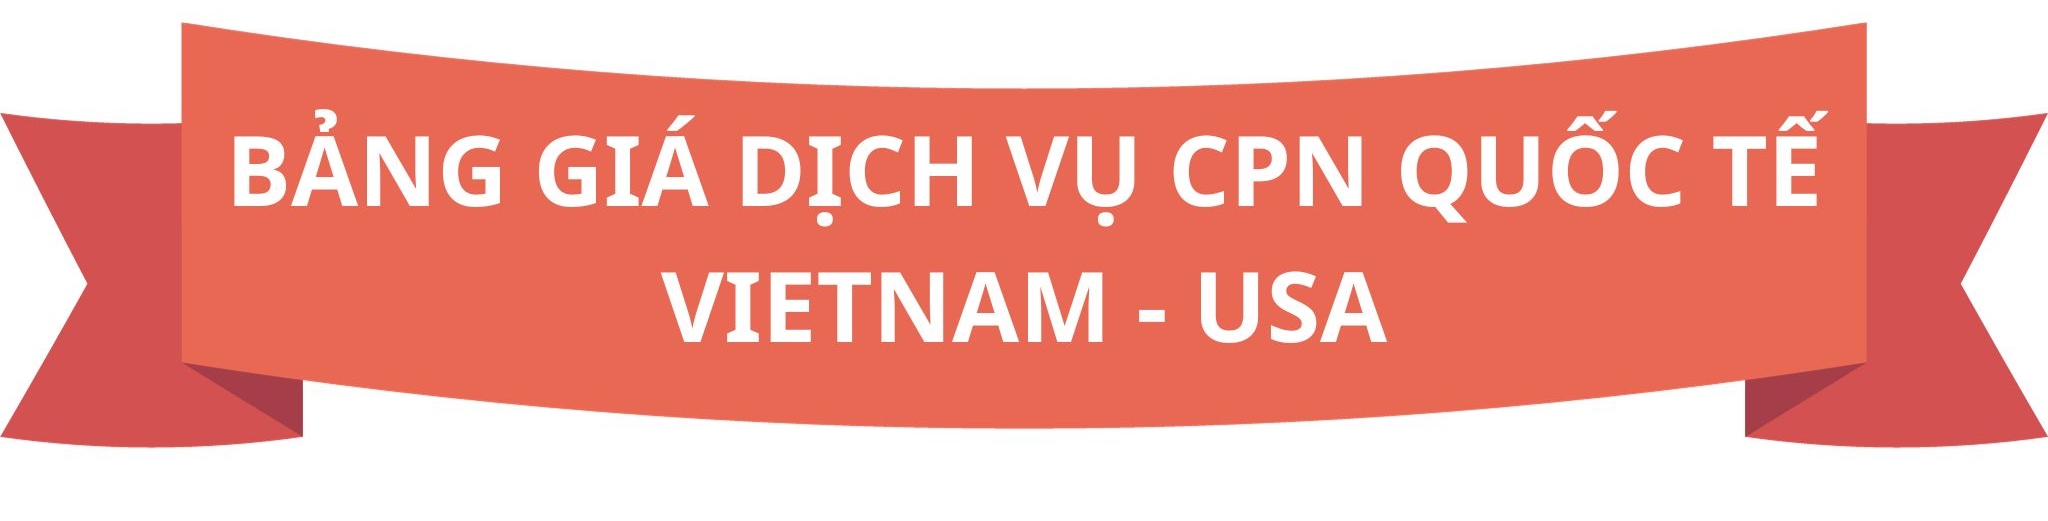 BẢNG GIÁ DỊCH VỤ CPN QUỐC TẾ VIETNAM - USA